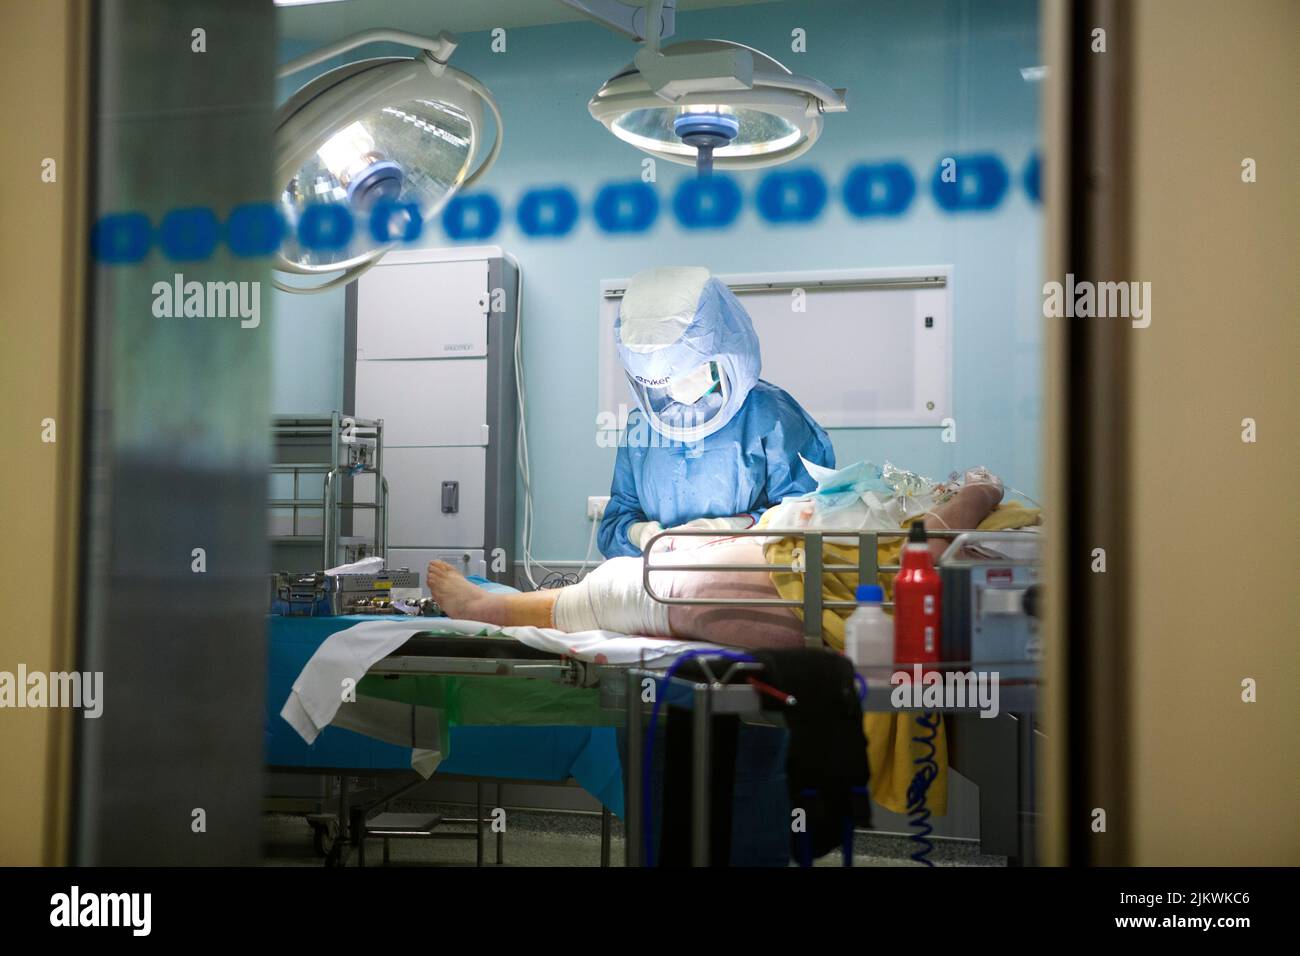 Orthopädische Chirurgie Operationssaal für Knieprothese, die Krankenschwester macht die Verbände. Stockfoto